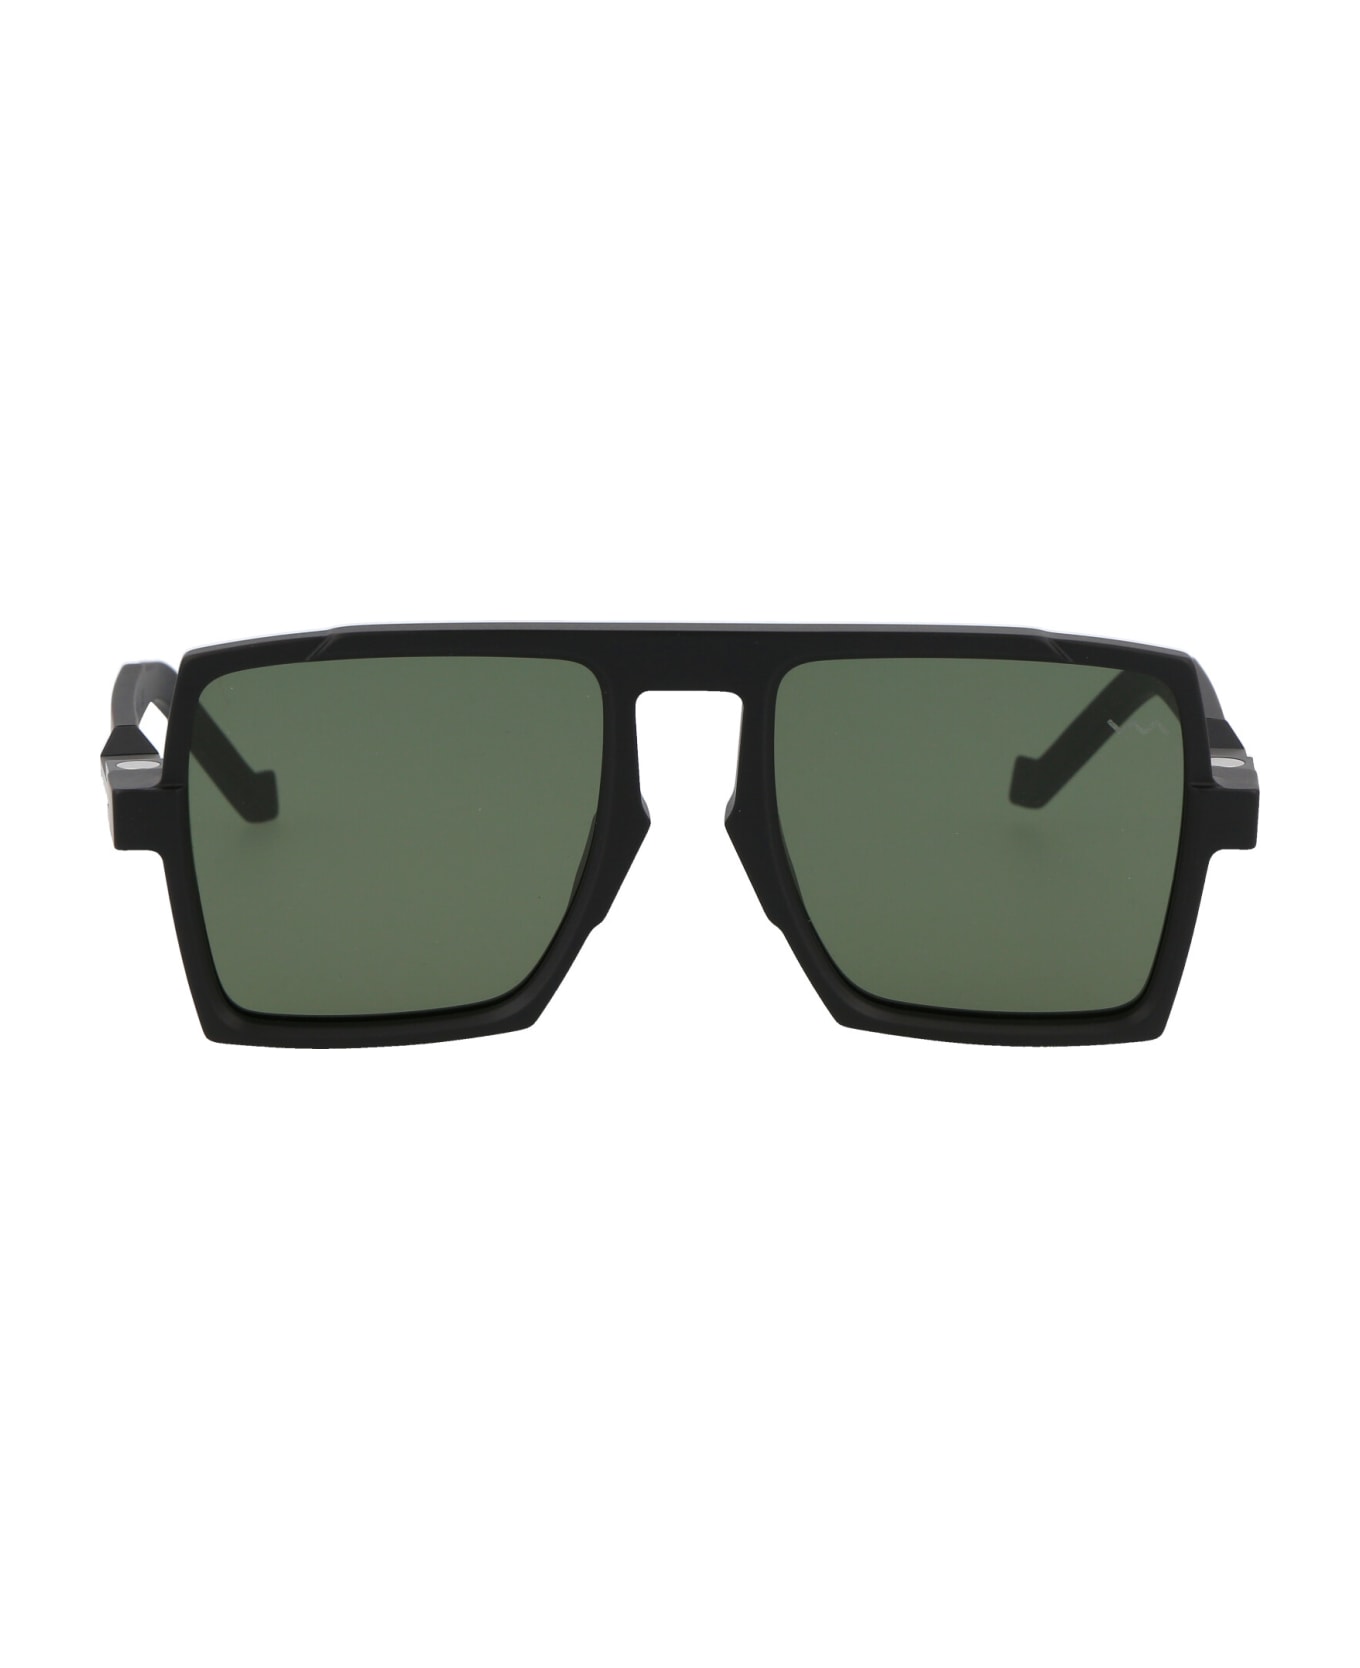 VAVA Bl0026 Sunglasses - MATTE BLACK|BLACK FLEX HINGES|GREEN LENSES サングラス